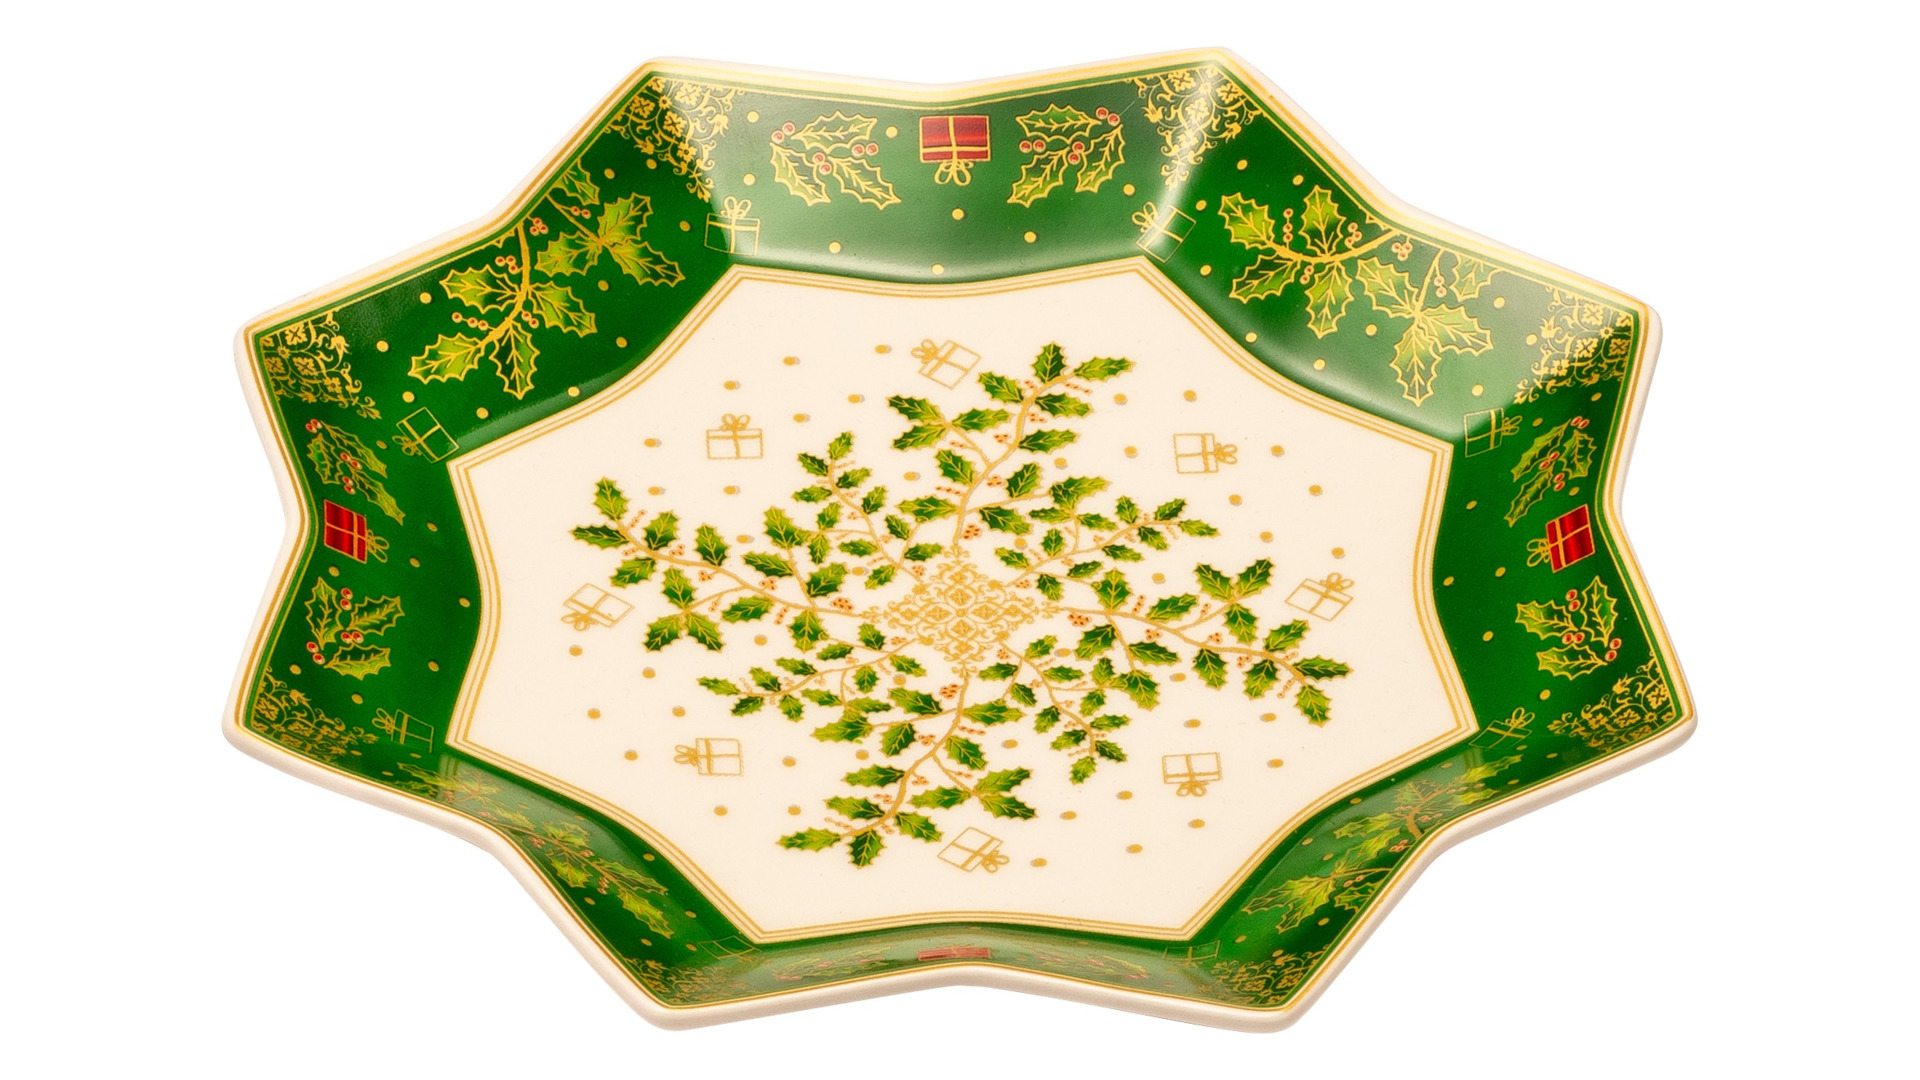 Блюдо-звезда сервировочное Lamart Palais Royal Остролист 20 см, бело-зеленый, фарфор